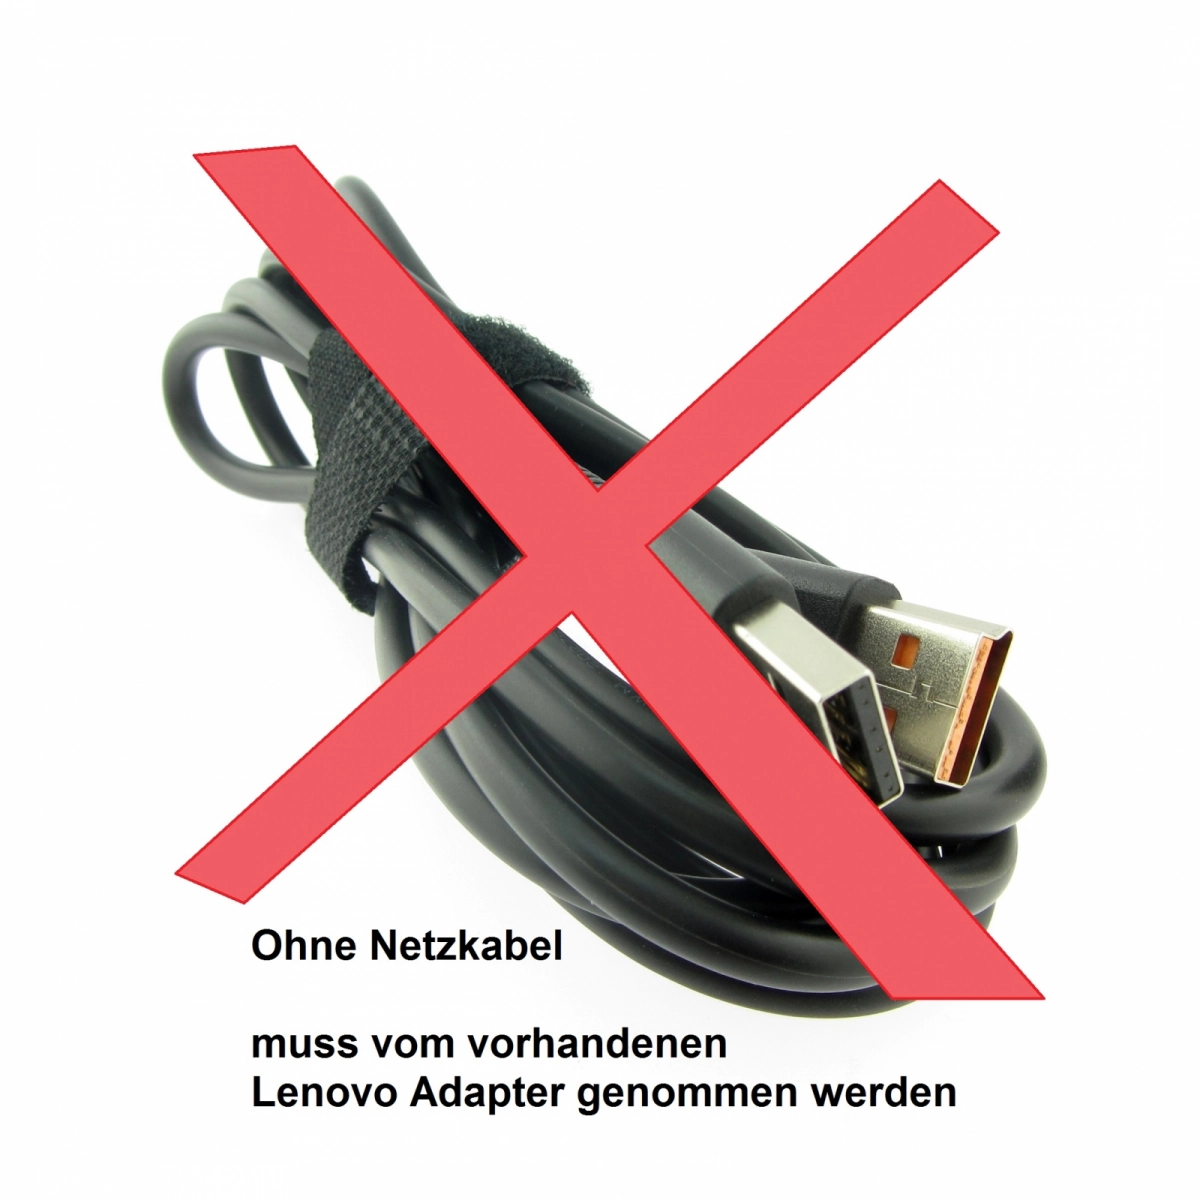 Original Netzteil für LENOVO SA10M42744, 20V, 2A, Stecker USB, ohne USB-Kabel